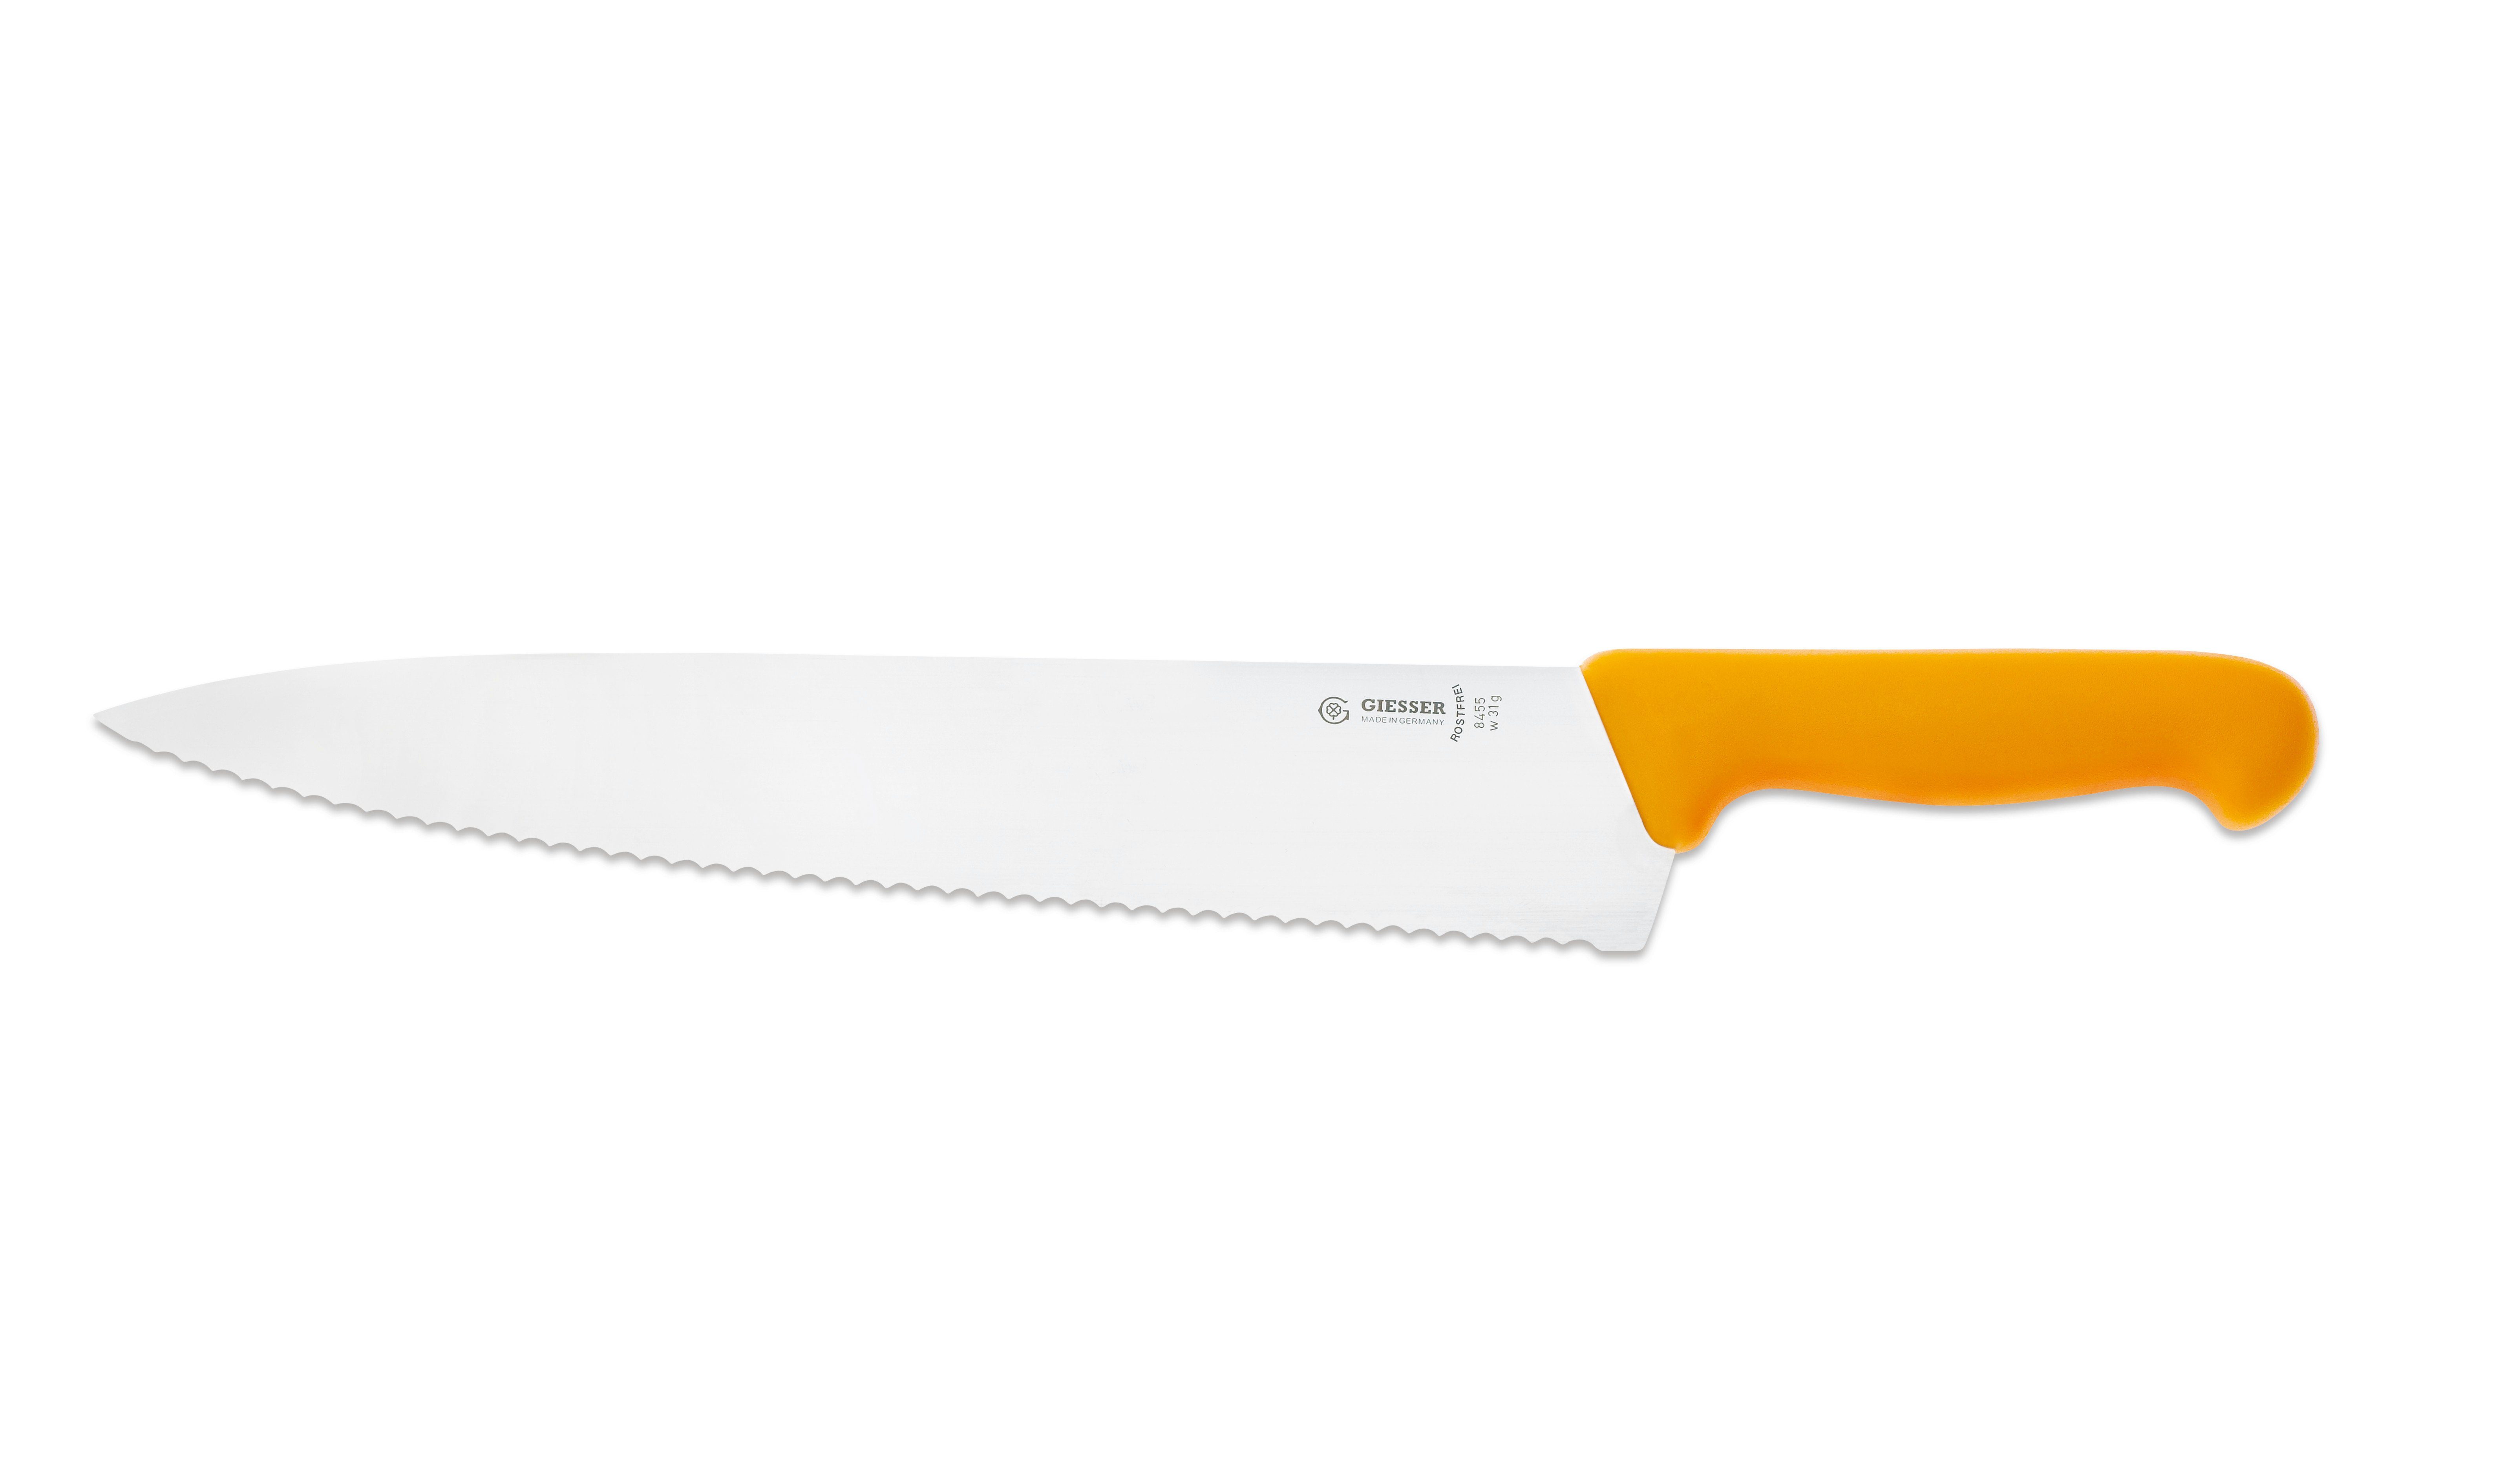 Giesser Messer Kochmesser Küchenmesser breit 8455, Rostfrei, breite Form, scharf, Handabzug, Ideal für jede Küche gelb-Welle